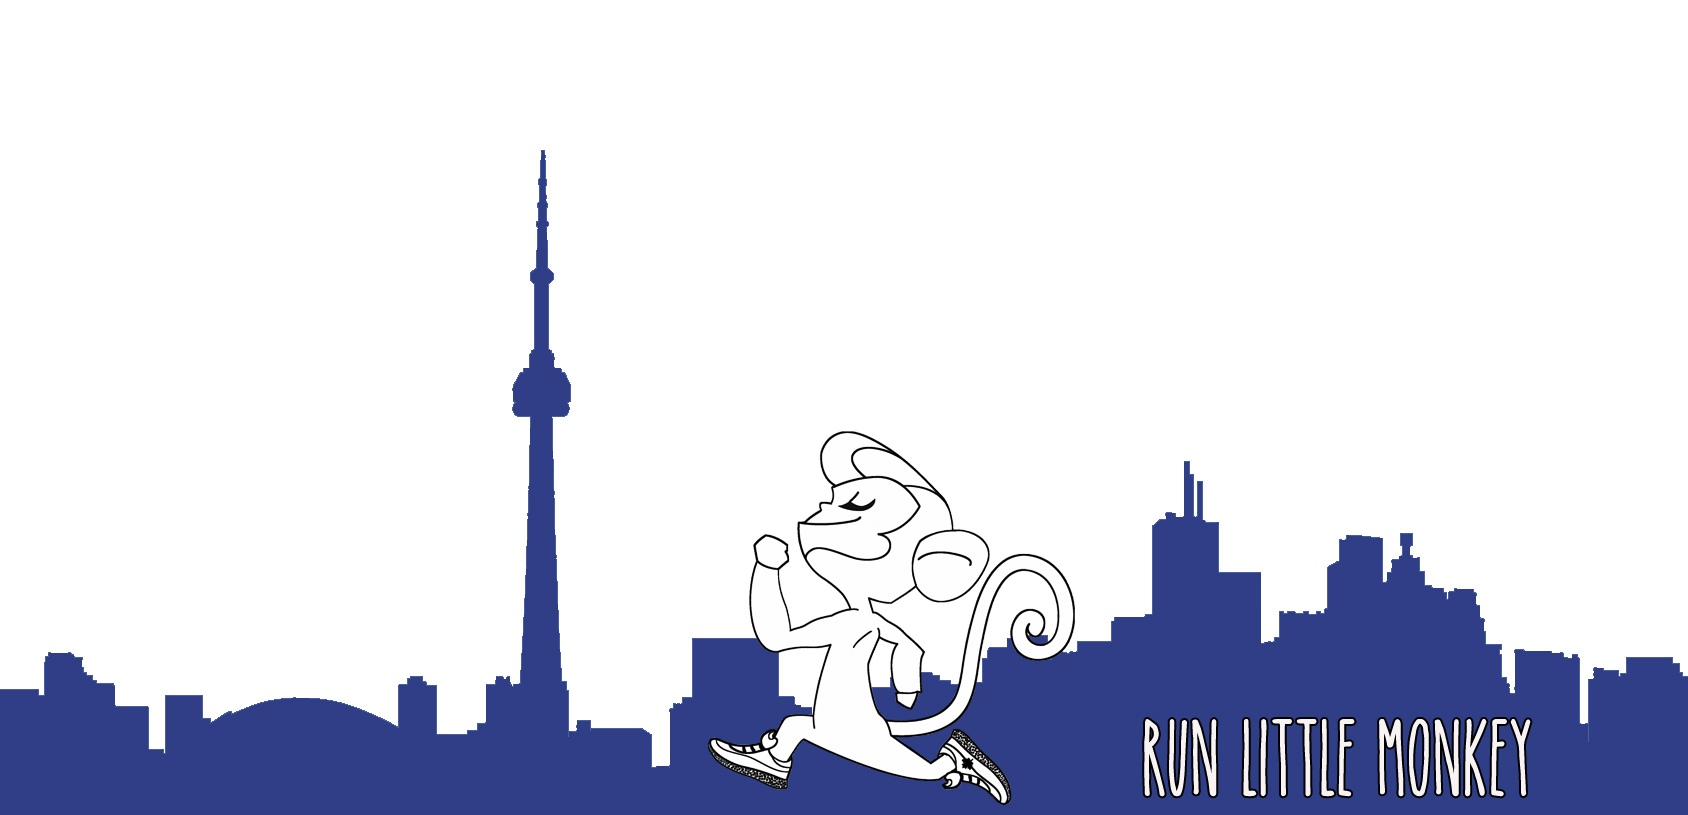 Run Little Monkey Toronto running skyline